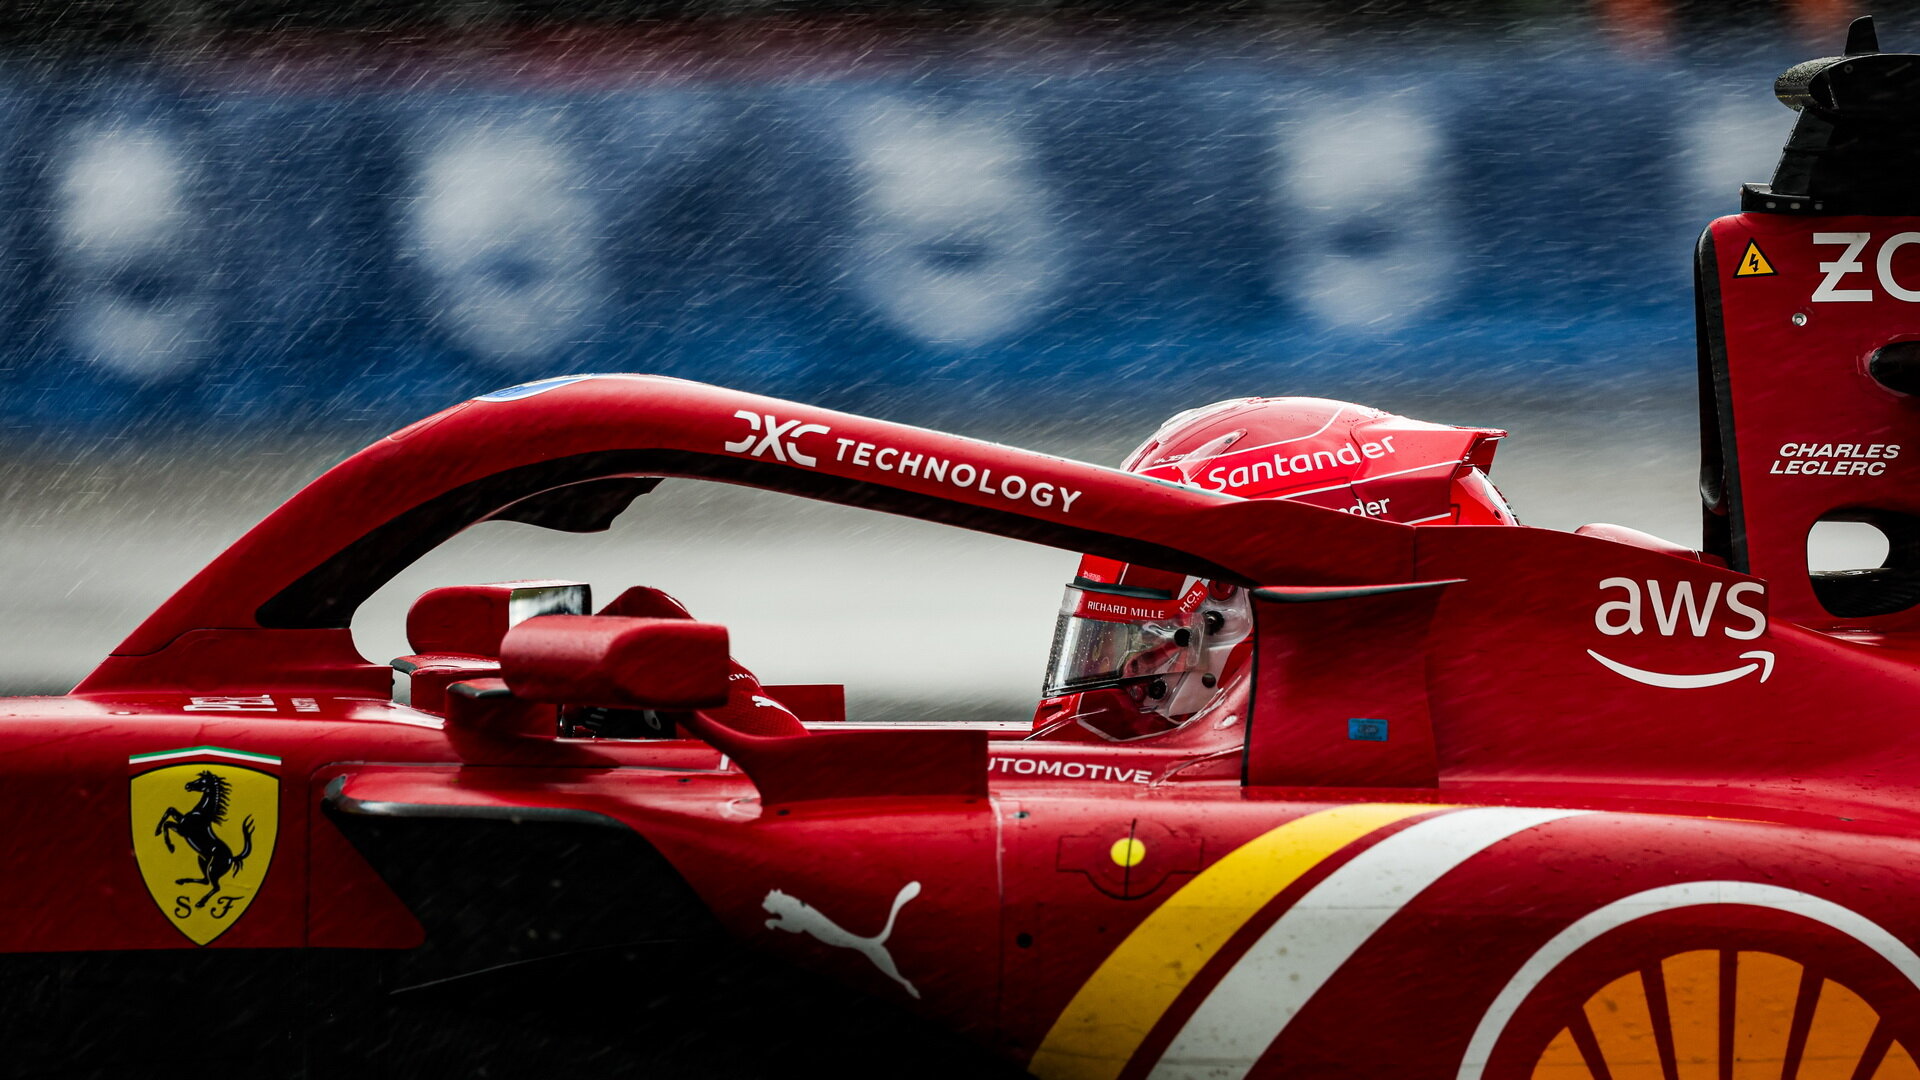 Charles Leclerc v dešti v závodě v Kanadě